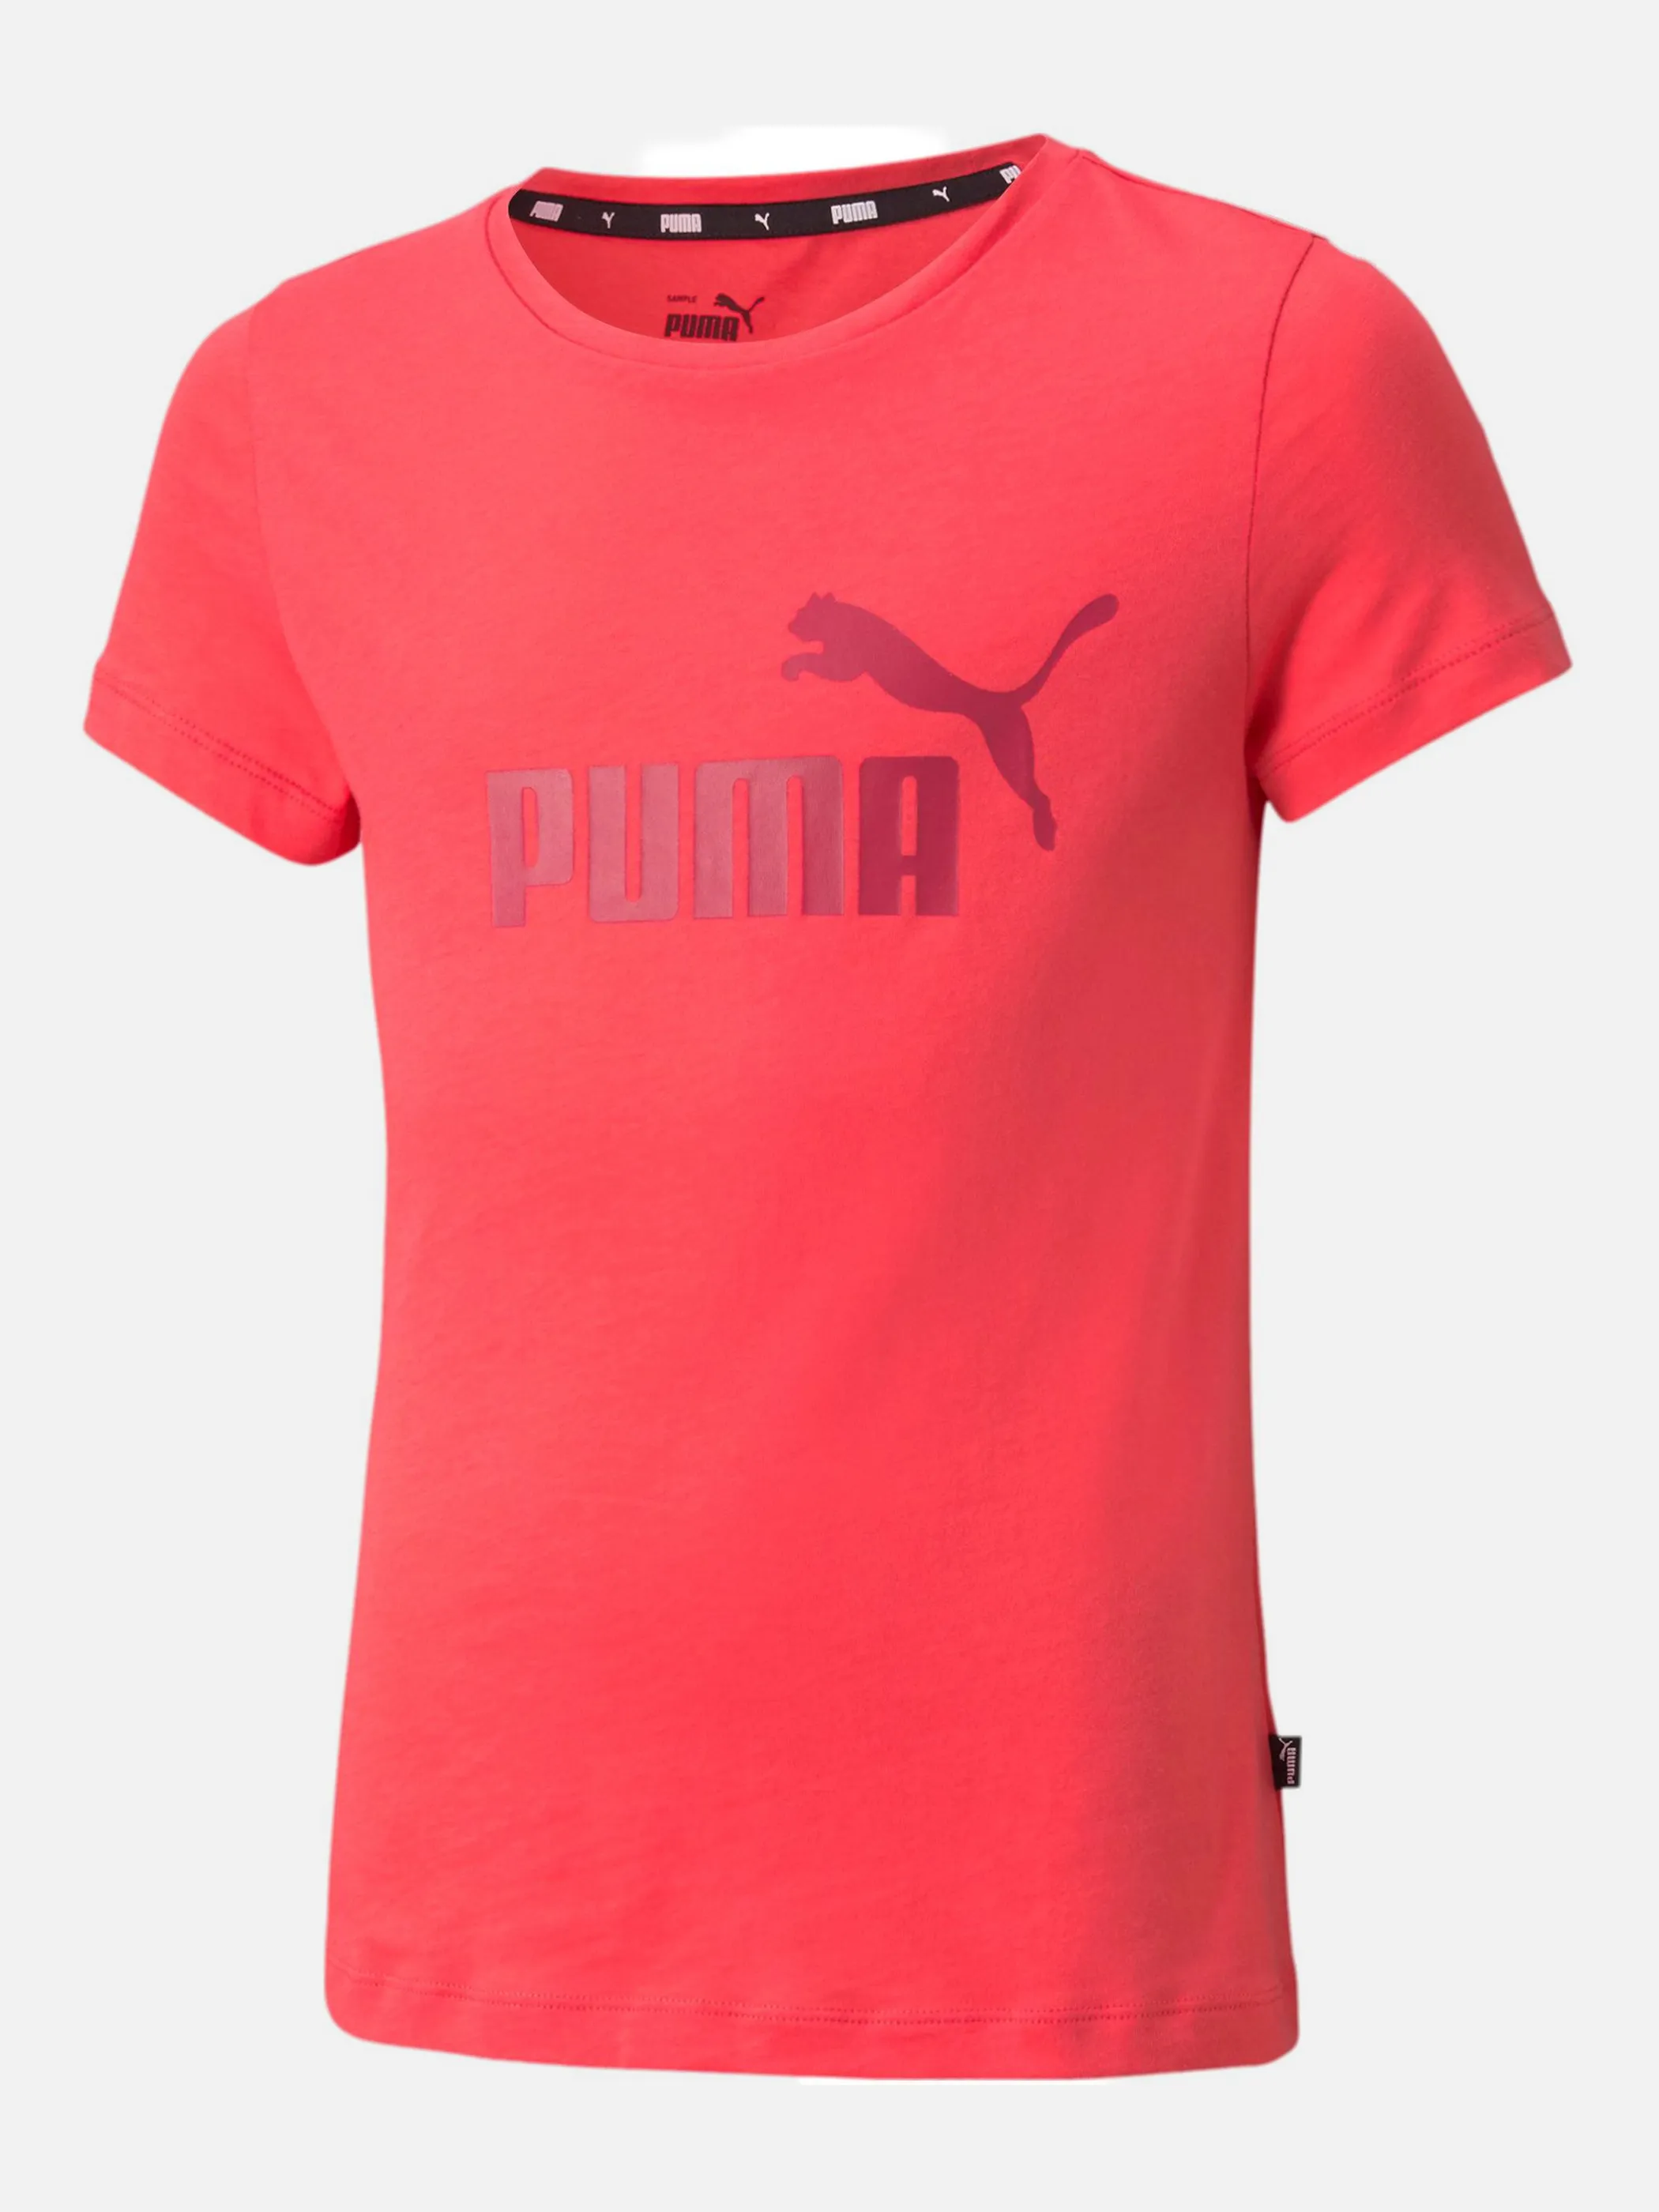 Puma 587029 Md-T-Shirt mit Logo Pink 856620 35 1